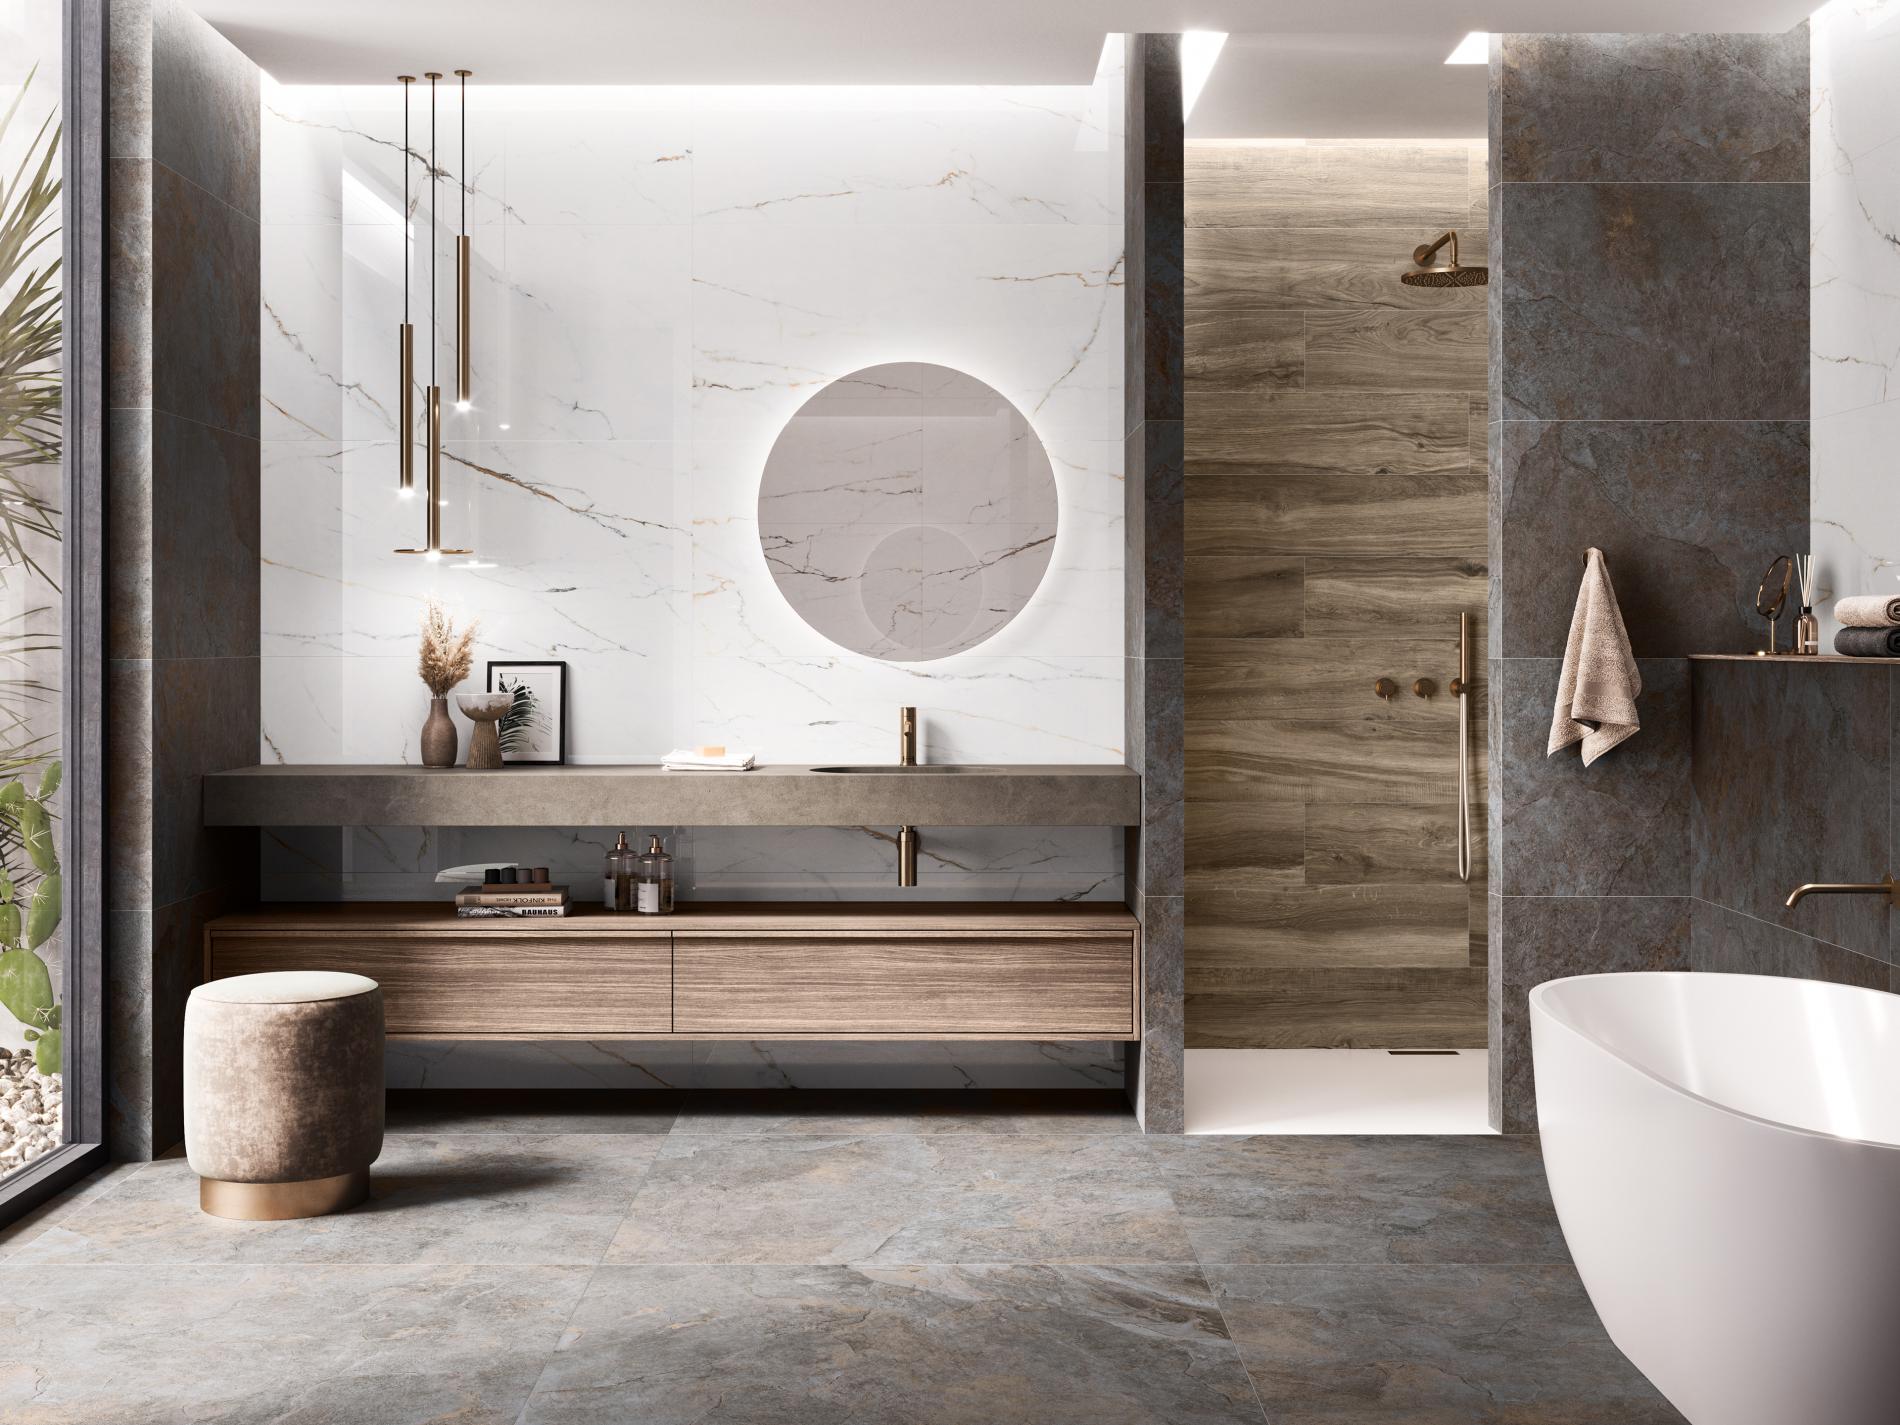 Łazienka wyłożona płytkami imitującymi kamień, marmur i drewno z kabiną prysznicową, białą wanną, wiszącą półką i szafką z umywalką, okrągłym lustrem i lampą wiszącą